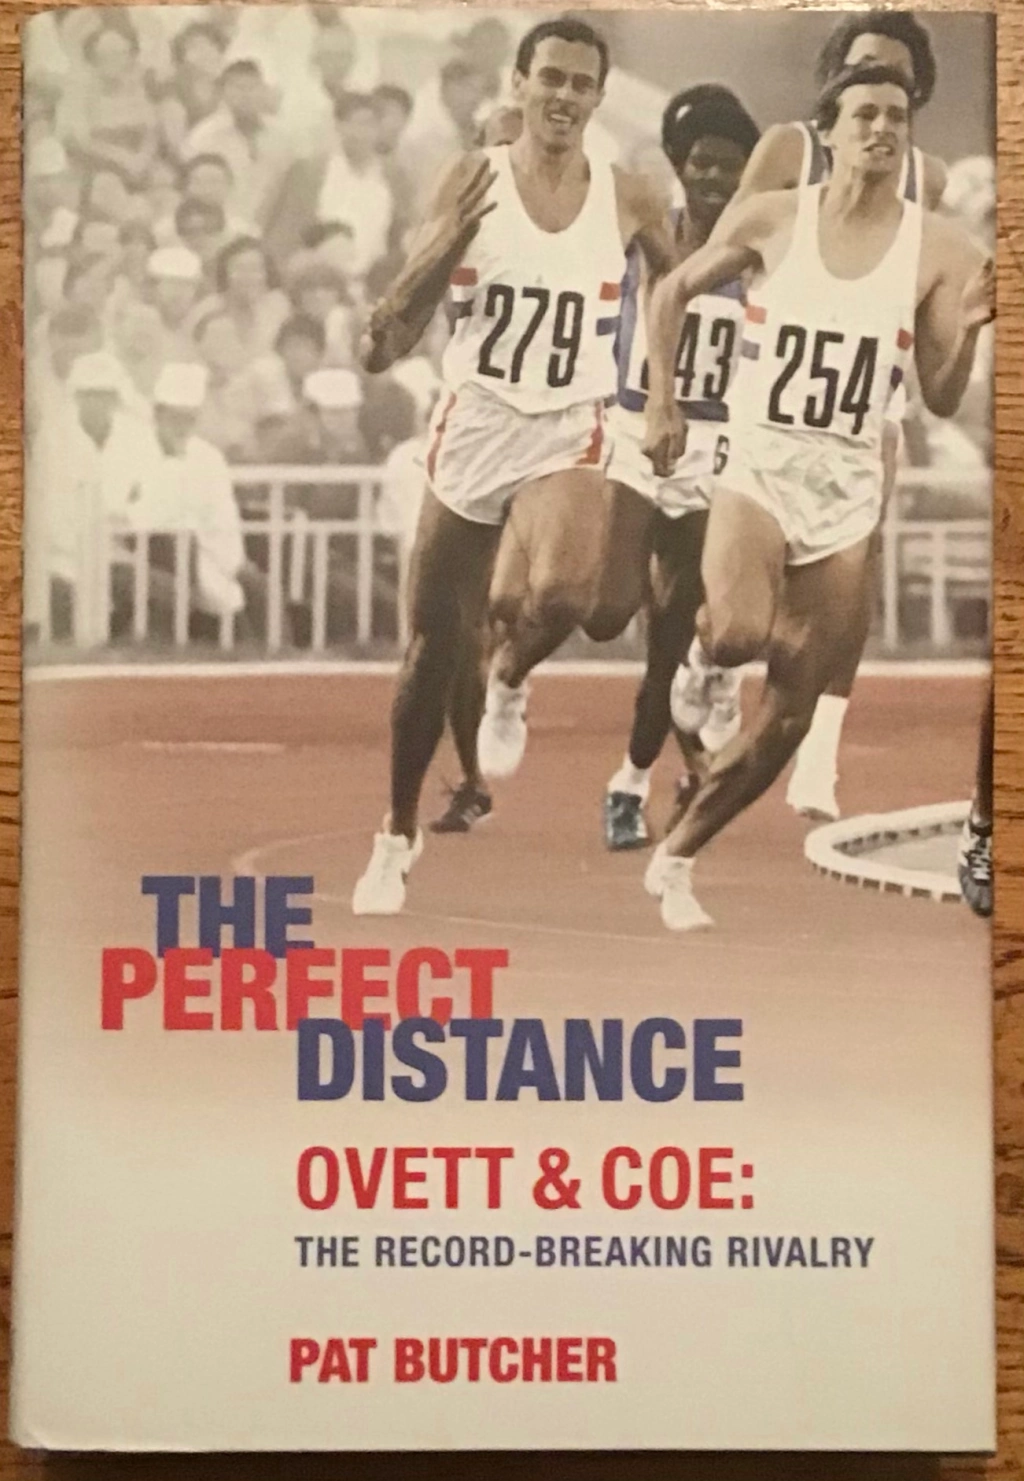 Running and Cheating: regarding Coe, Ovett and Savile